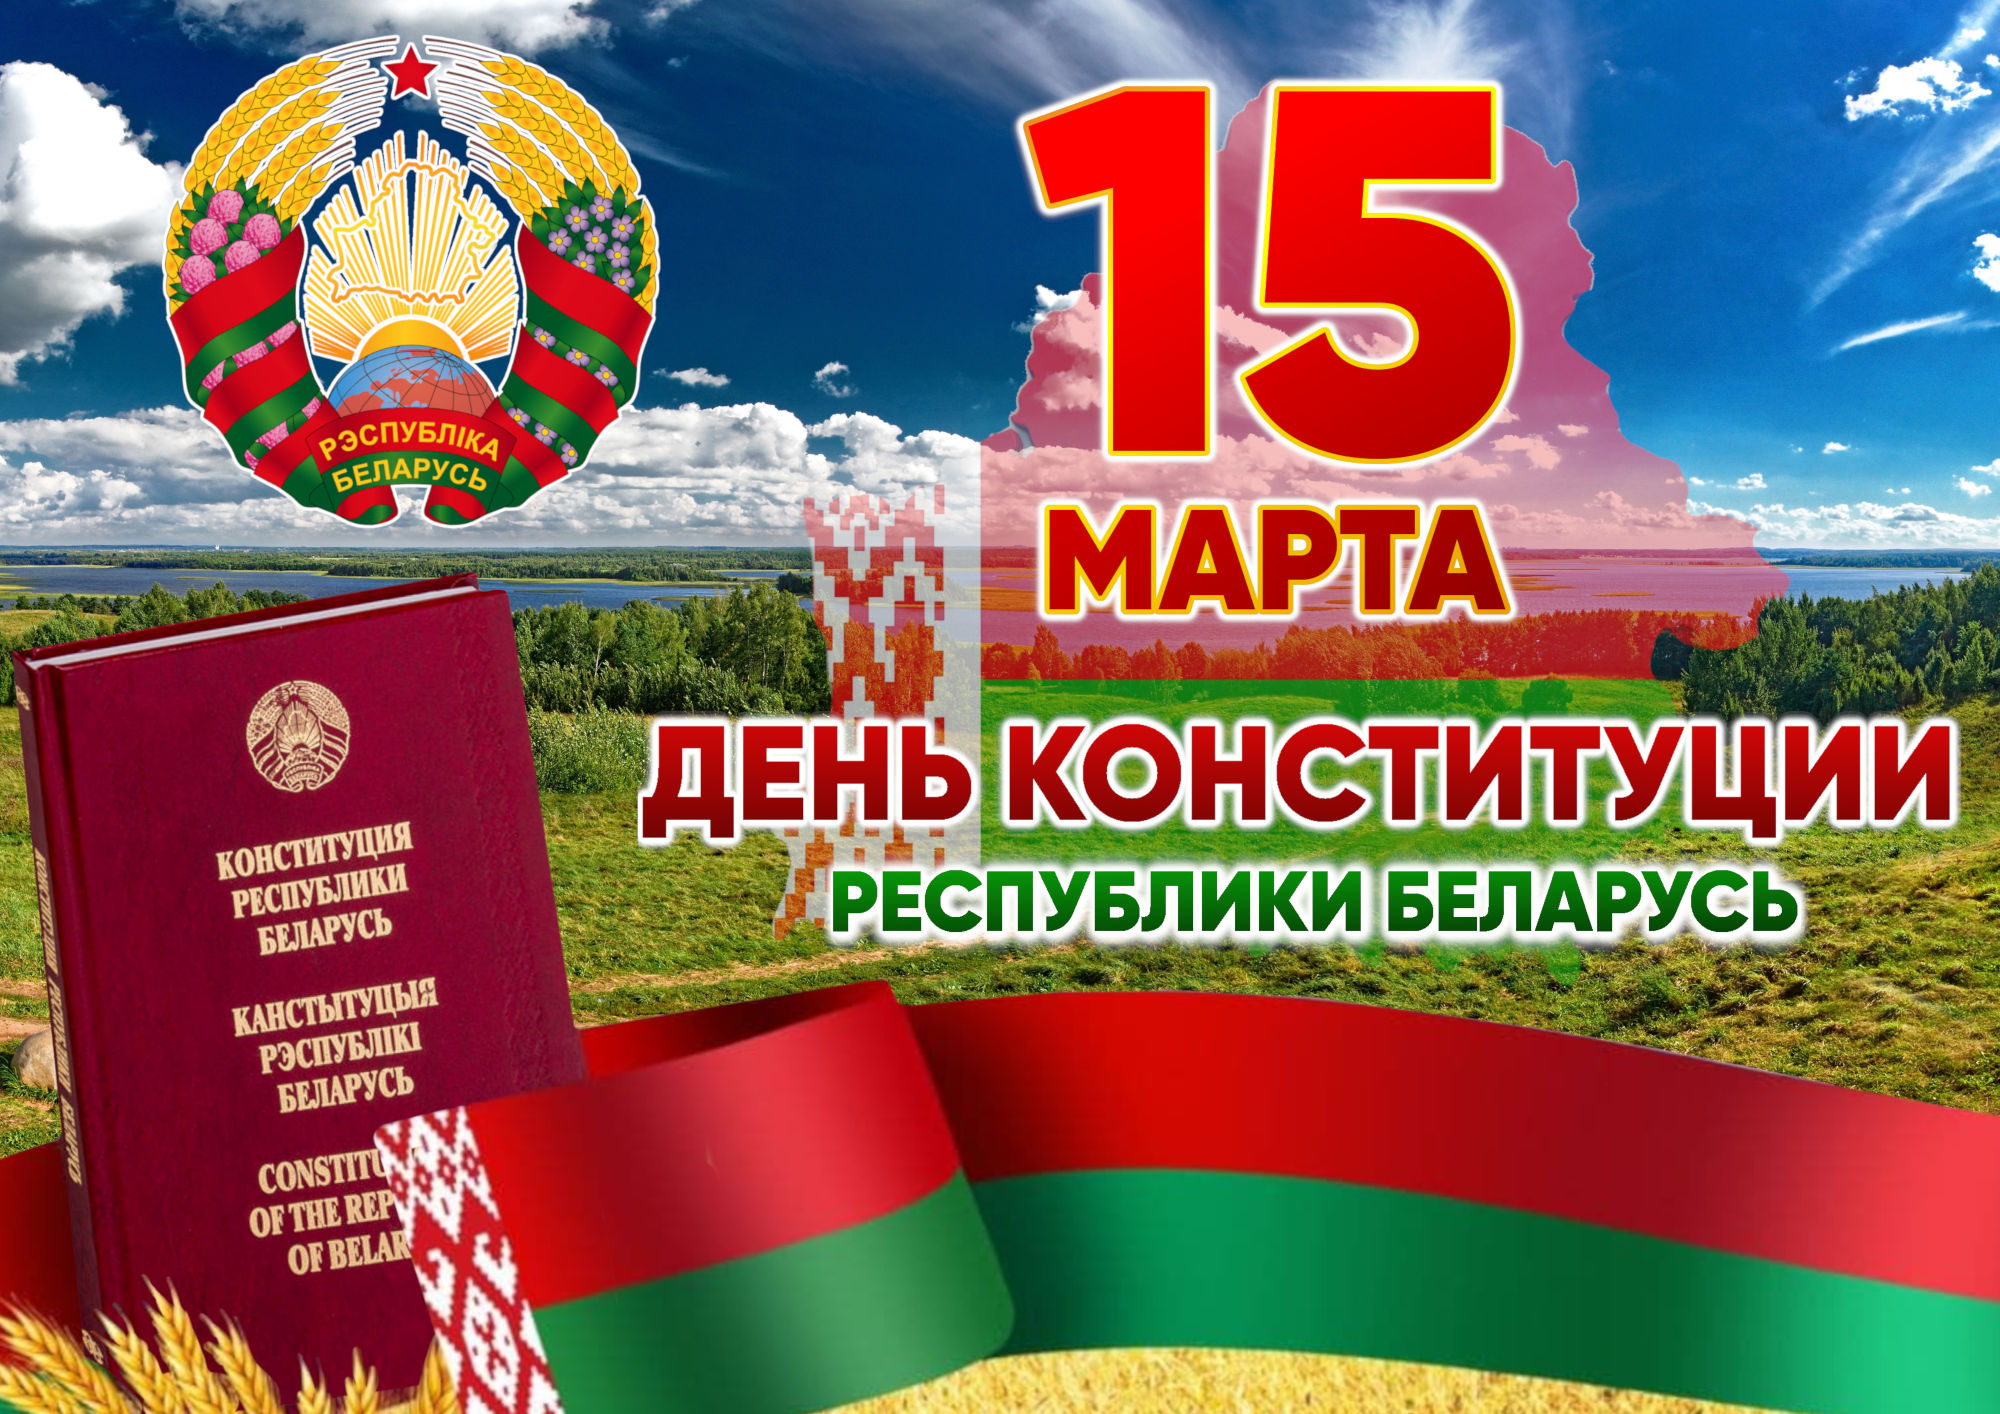 С Днем Конституции Республики Беларусь! 